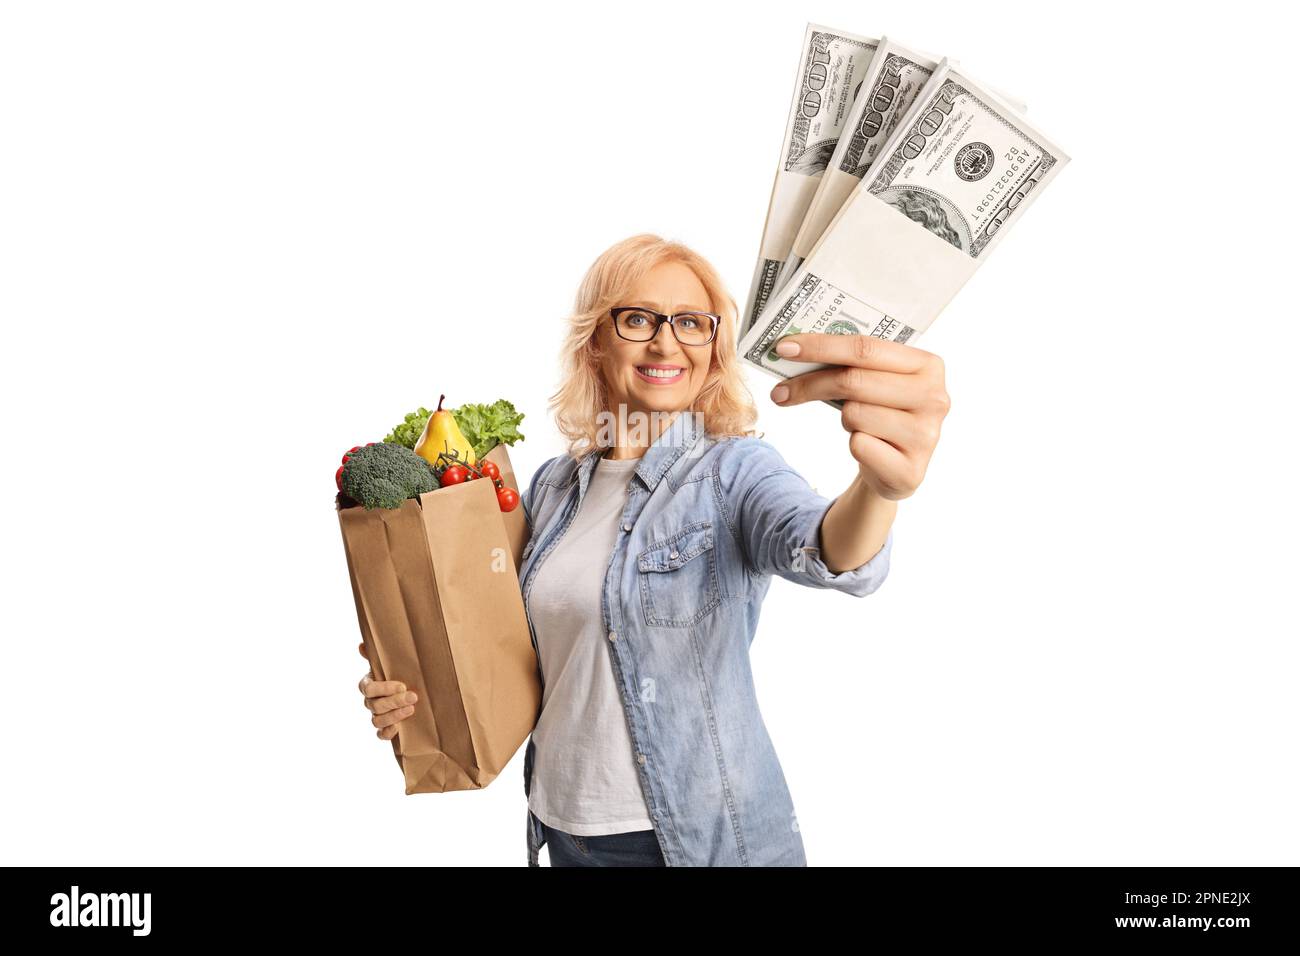 Eine Frau mit einer Einkaufstasche, die lächelt und Geldstapel zeigt, isoliert auf weißem Hintergrund Stockfoto